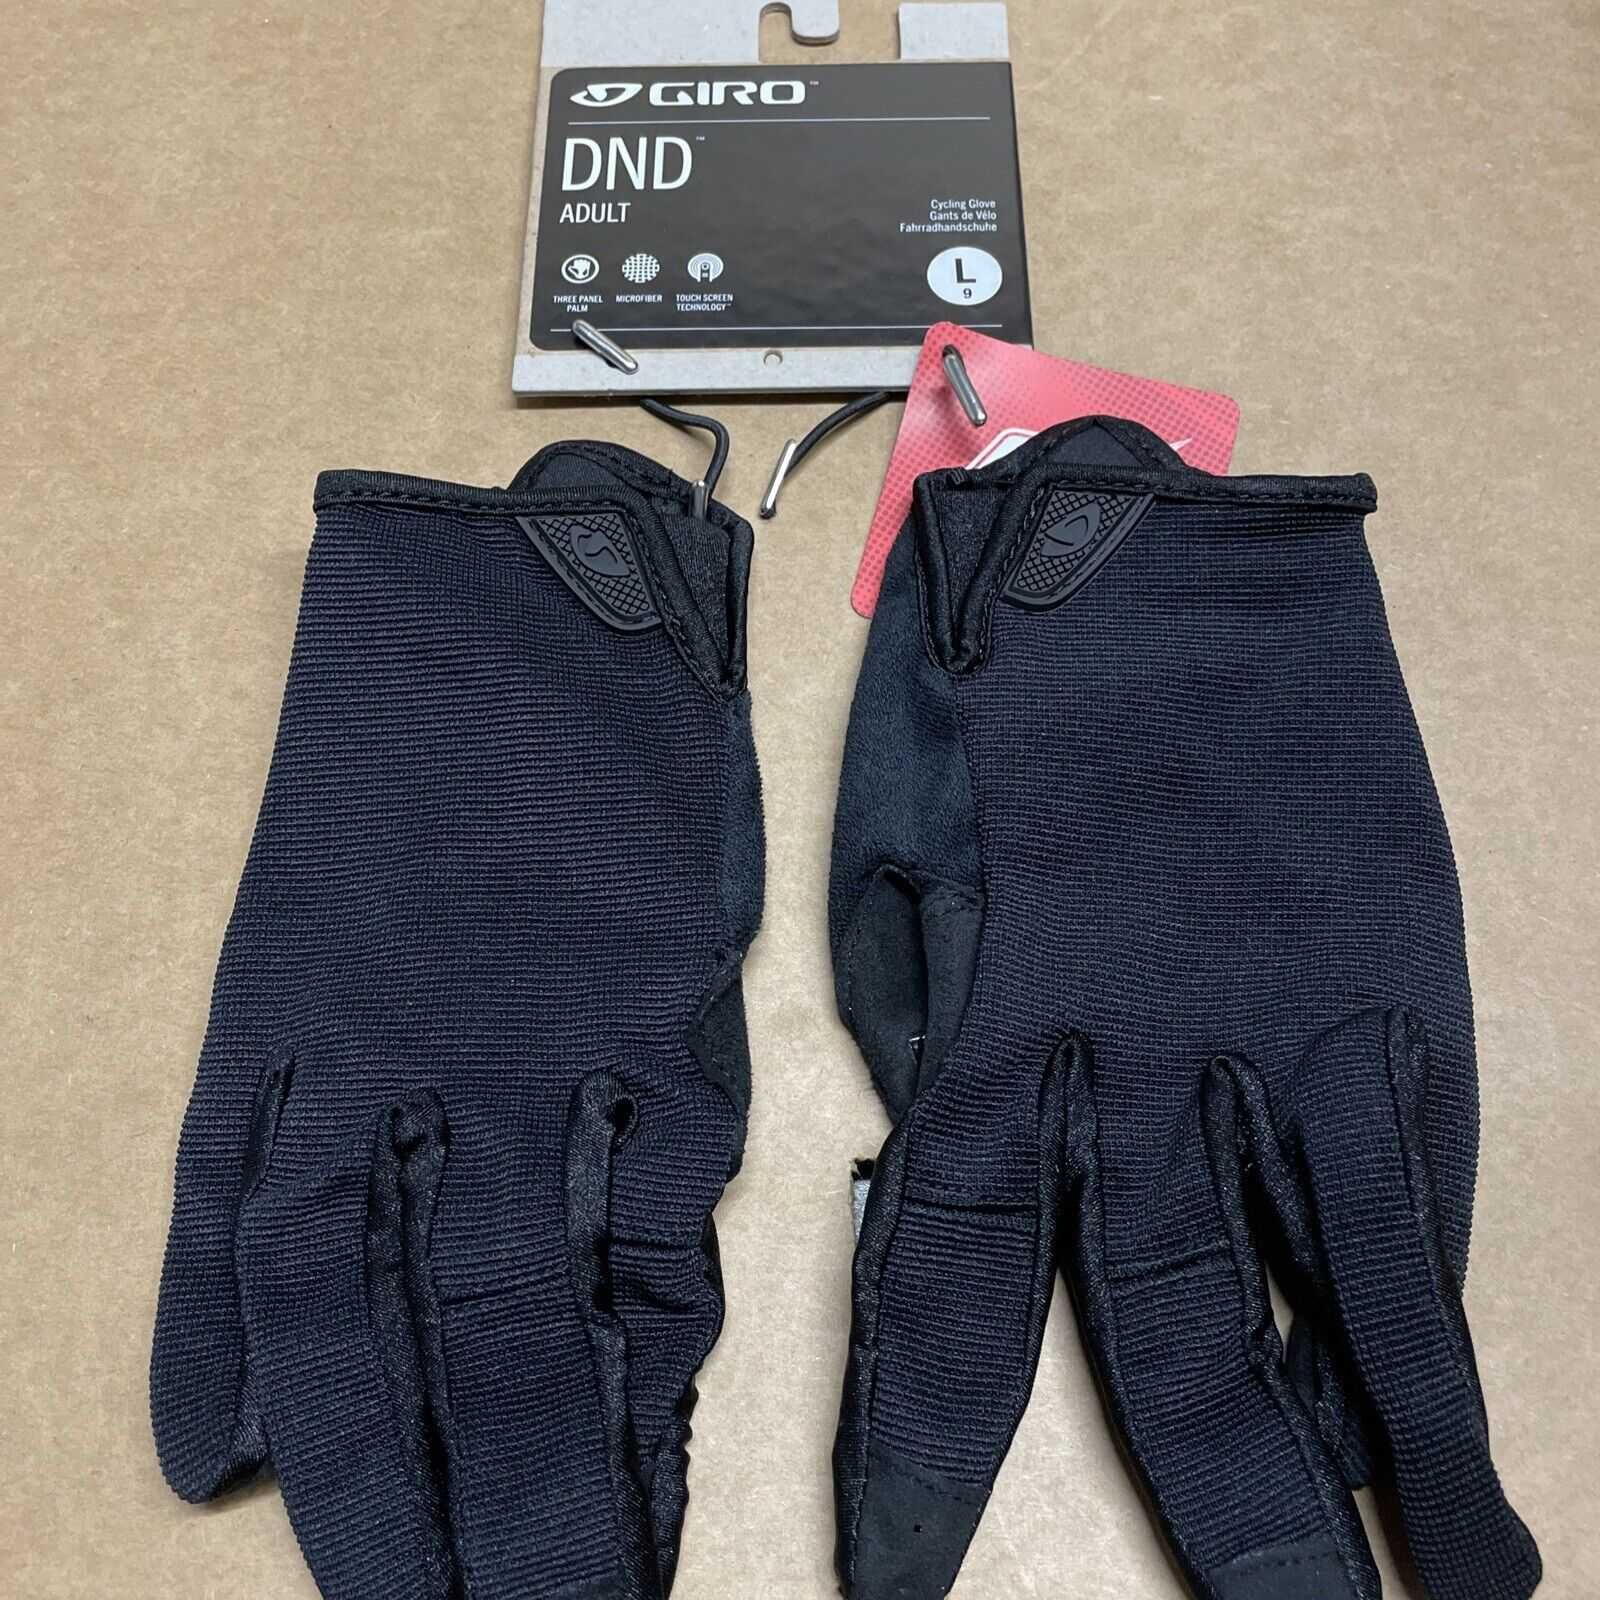 Перчатки Giro DND Gloves Size L Вело Авто TOUCH Велоперчатки Черные